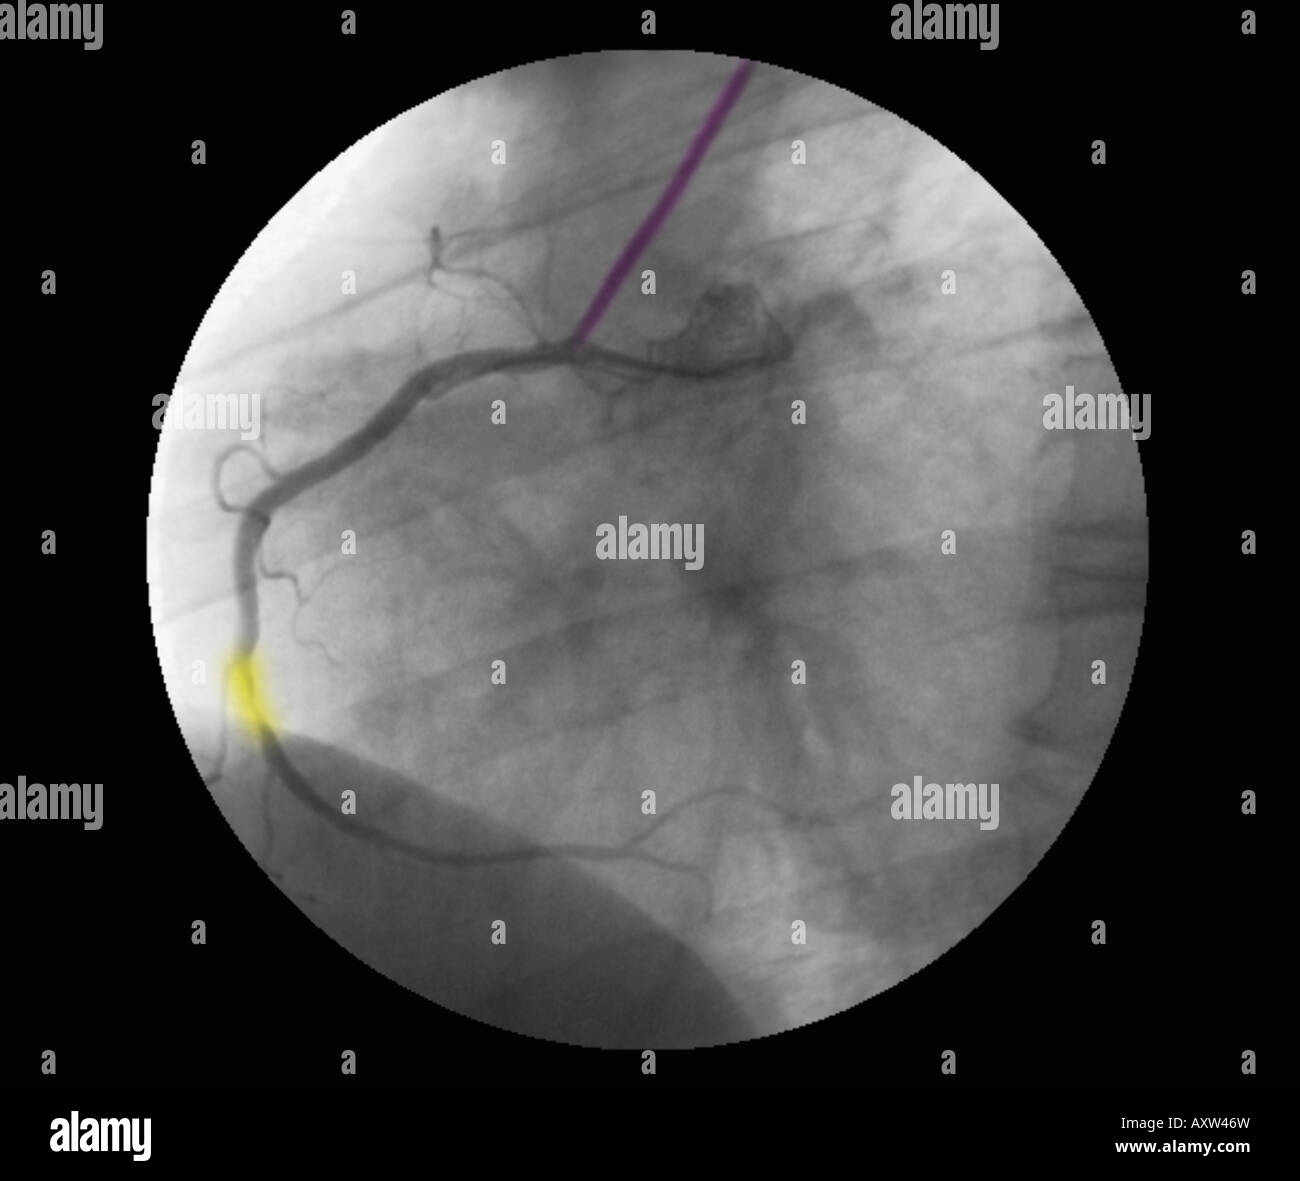 In modo digitale avanzata, colorizzato raggi x di un angiogramma coronarico che mostra la stenosi dell'arteria coronaria destra Foto Stock